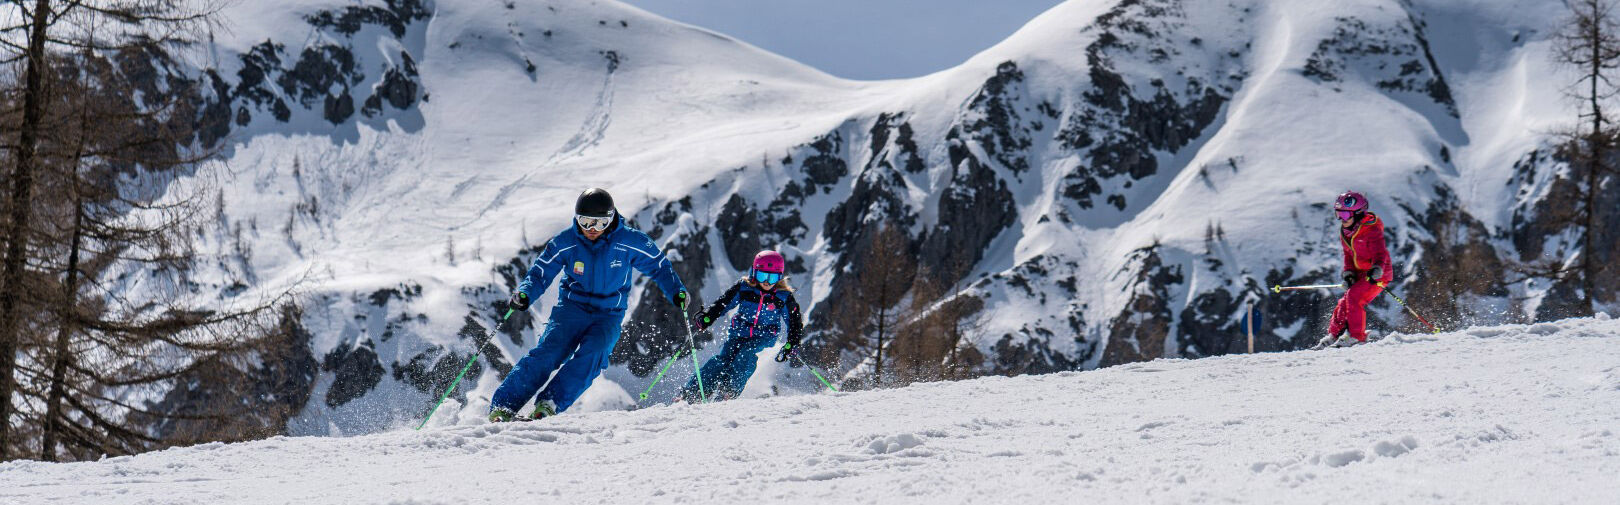 Skischool Flachau - skicursussen voor kinderen - van beginners tot gevorderden